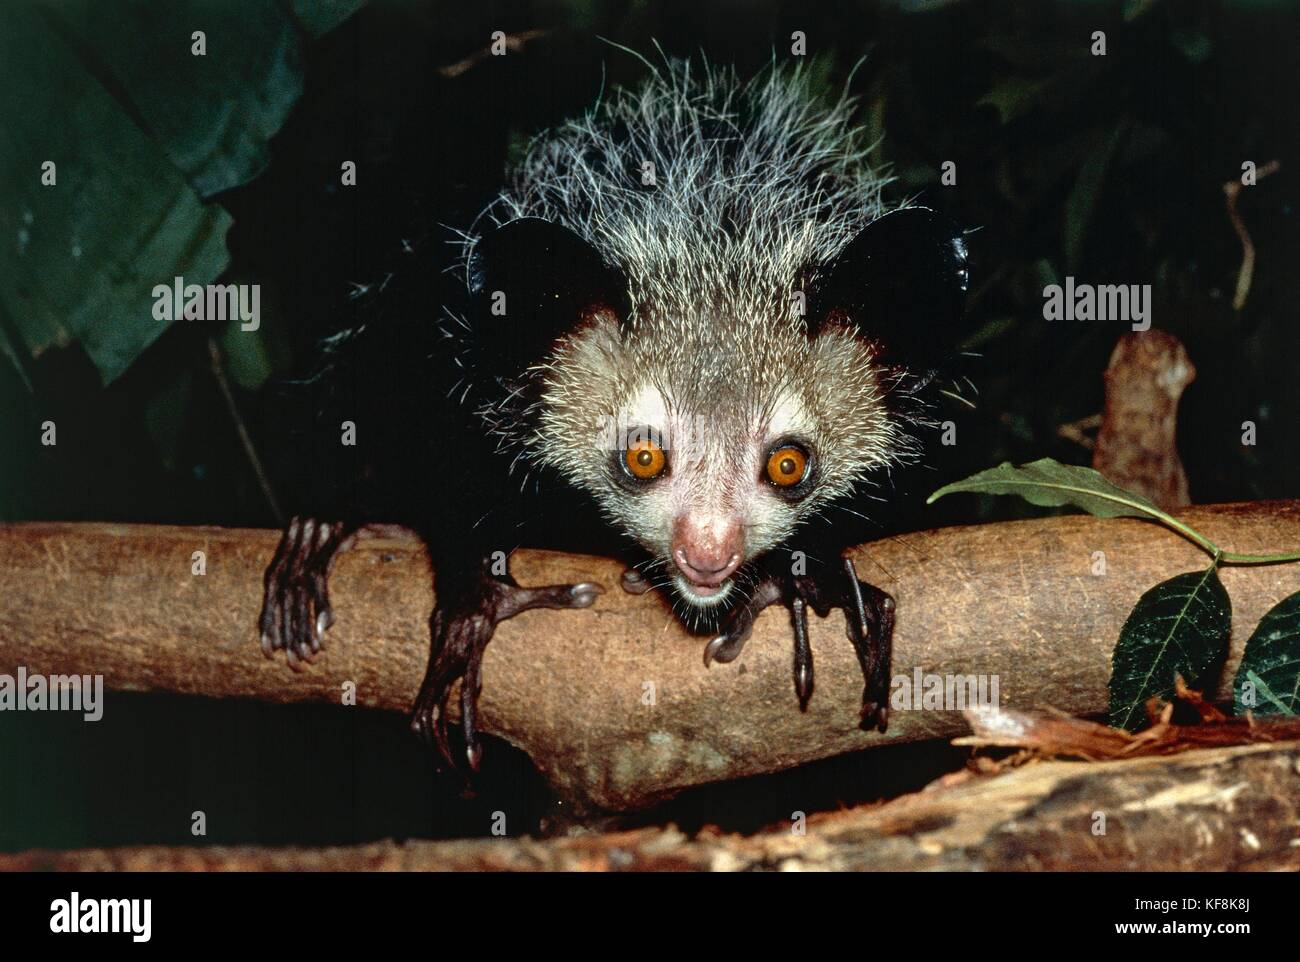 Ай ай ай споришь. Ай-ай животное. Ае ае животное. Ай ай животное красивые. Мадагаскарская руконожка в полный рост.